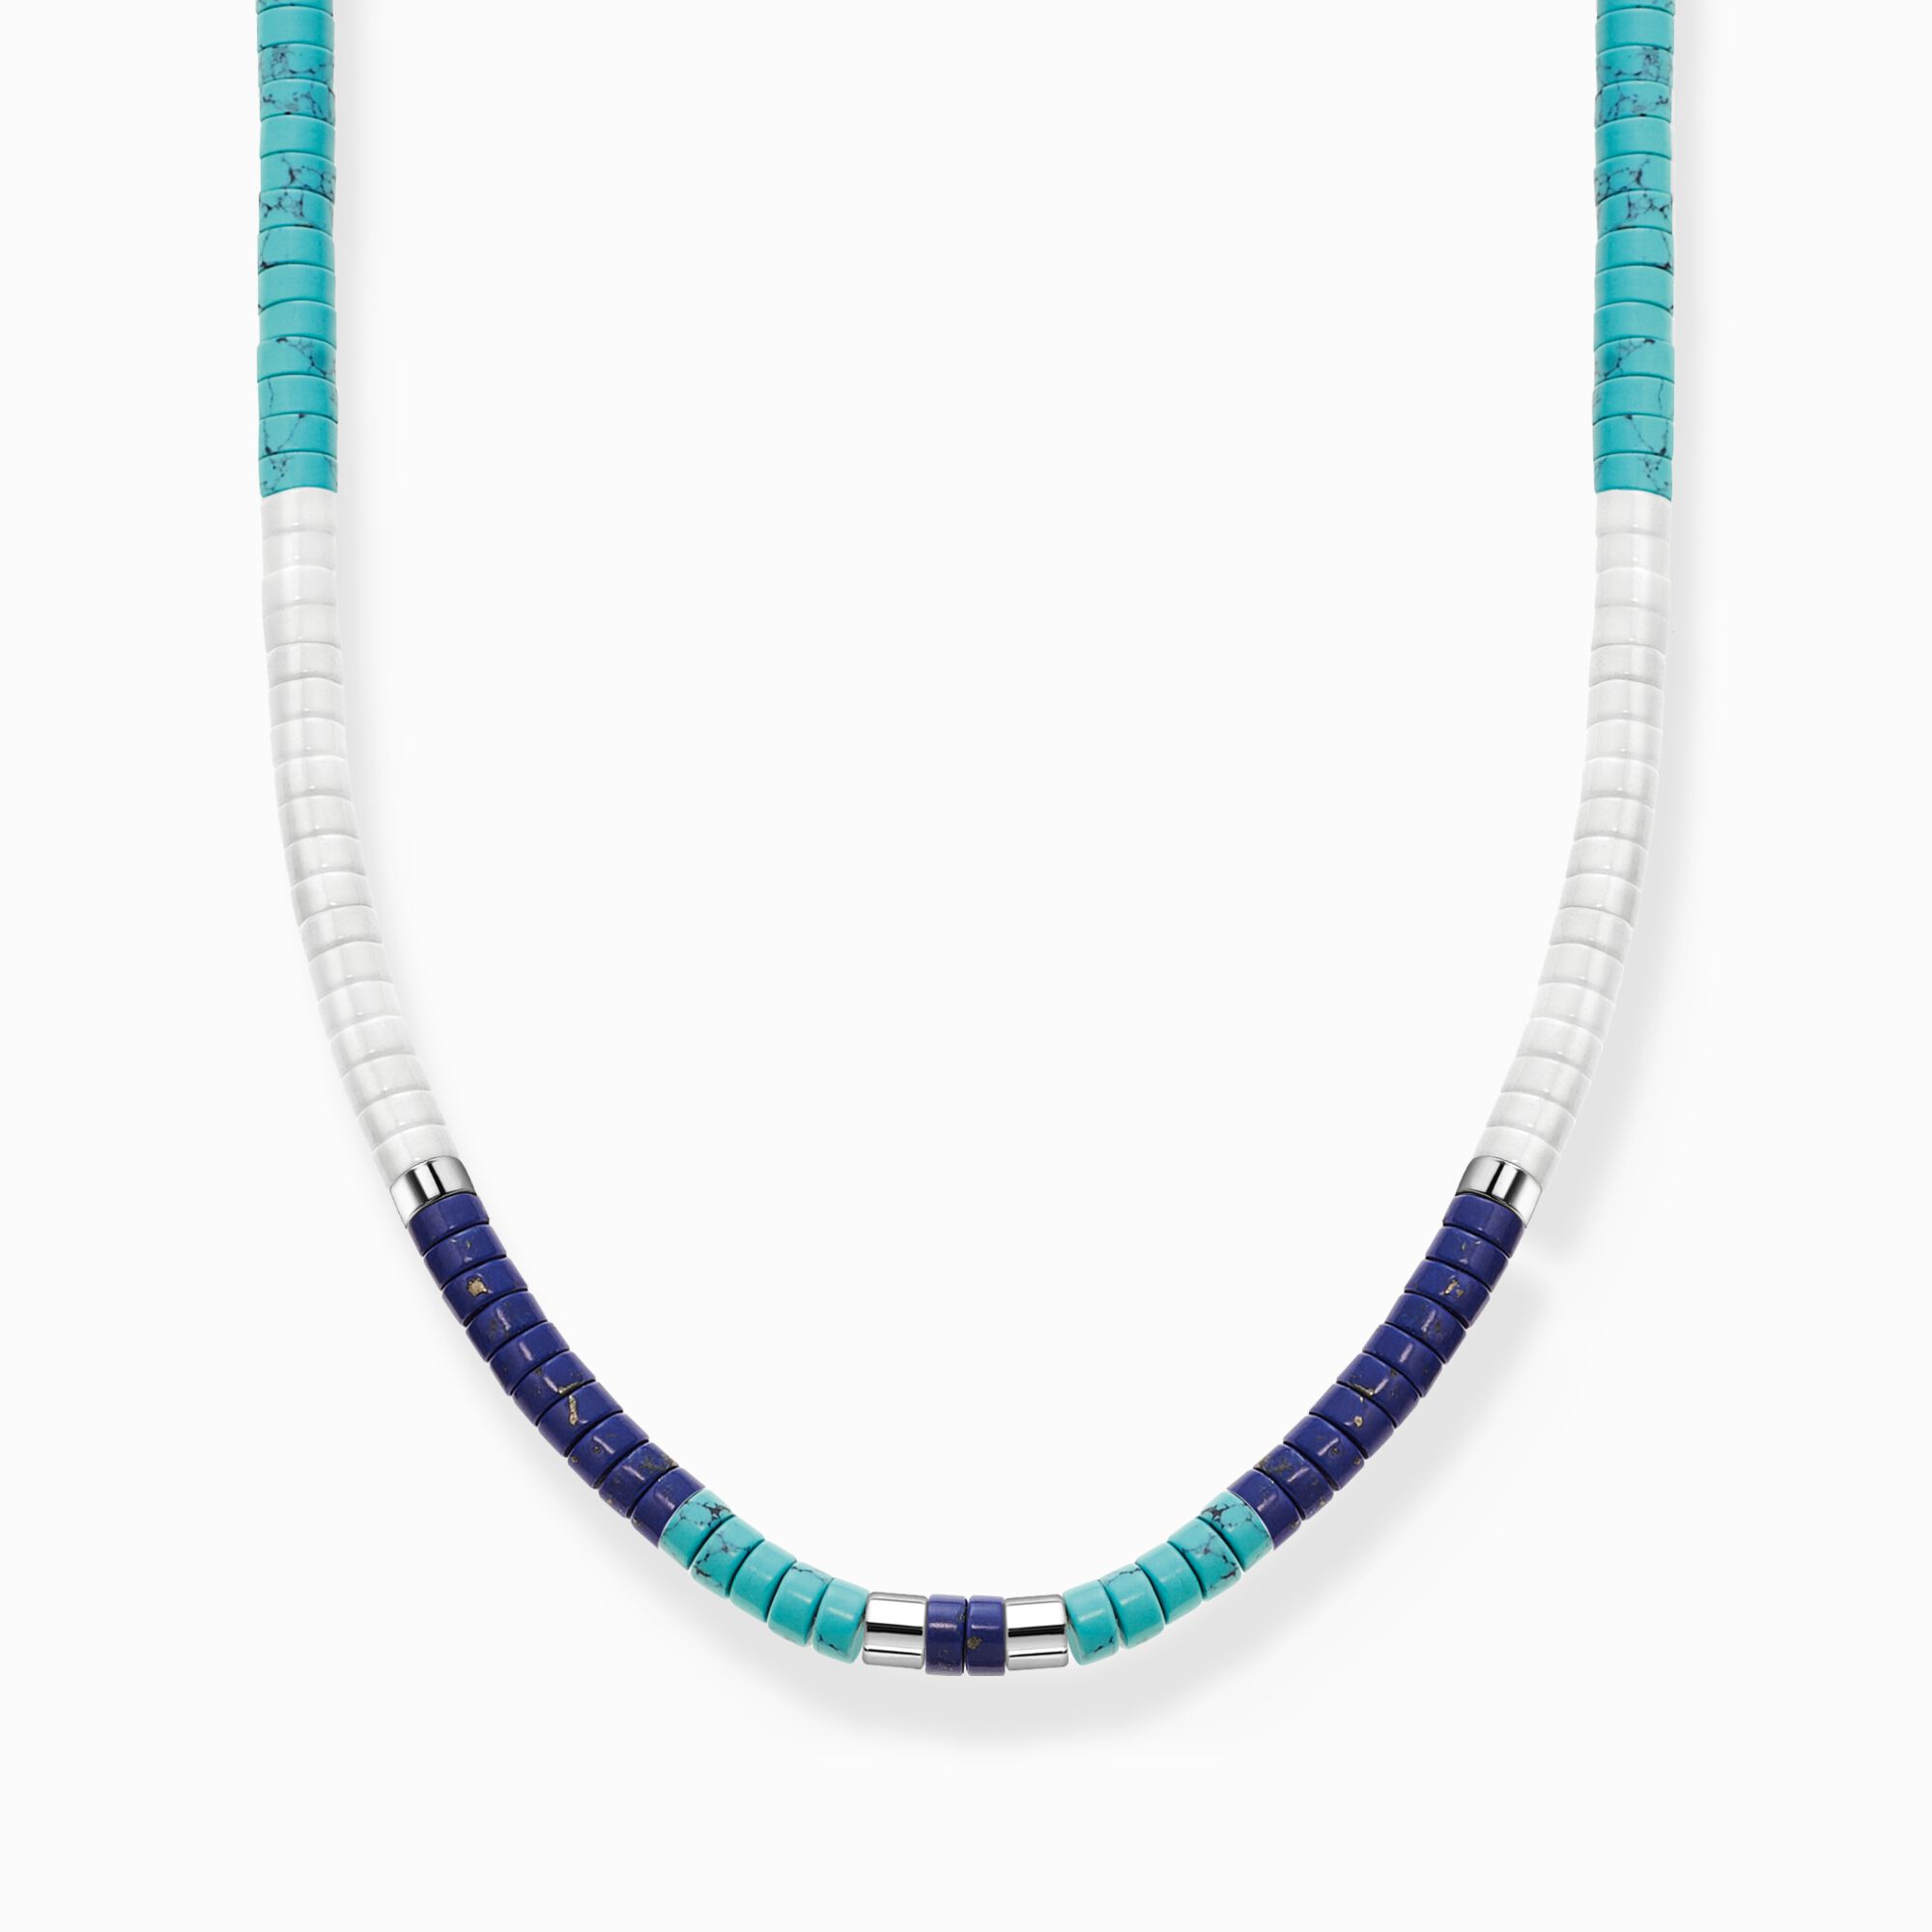 Kette mit blauen Steinen aus der Charming Collection Kollektion im Online Shop von THOMAS SABO